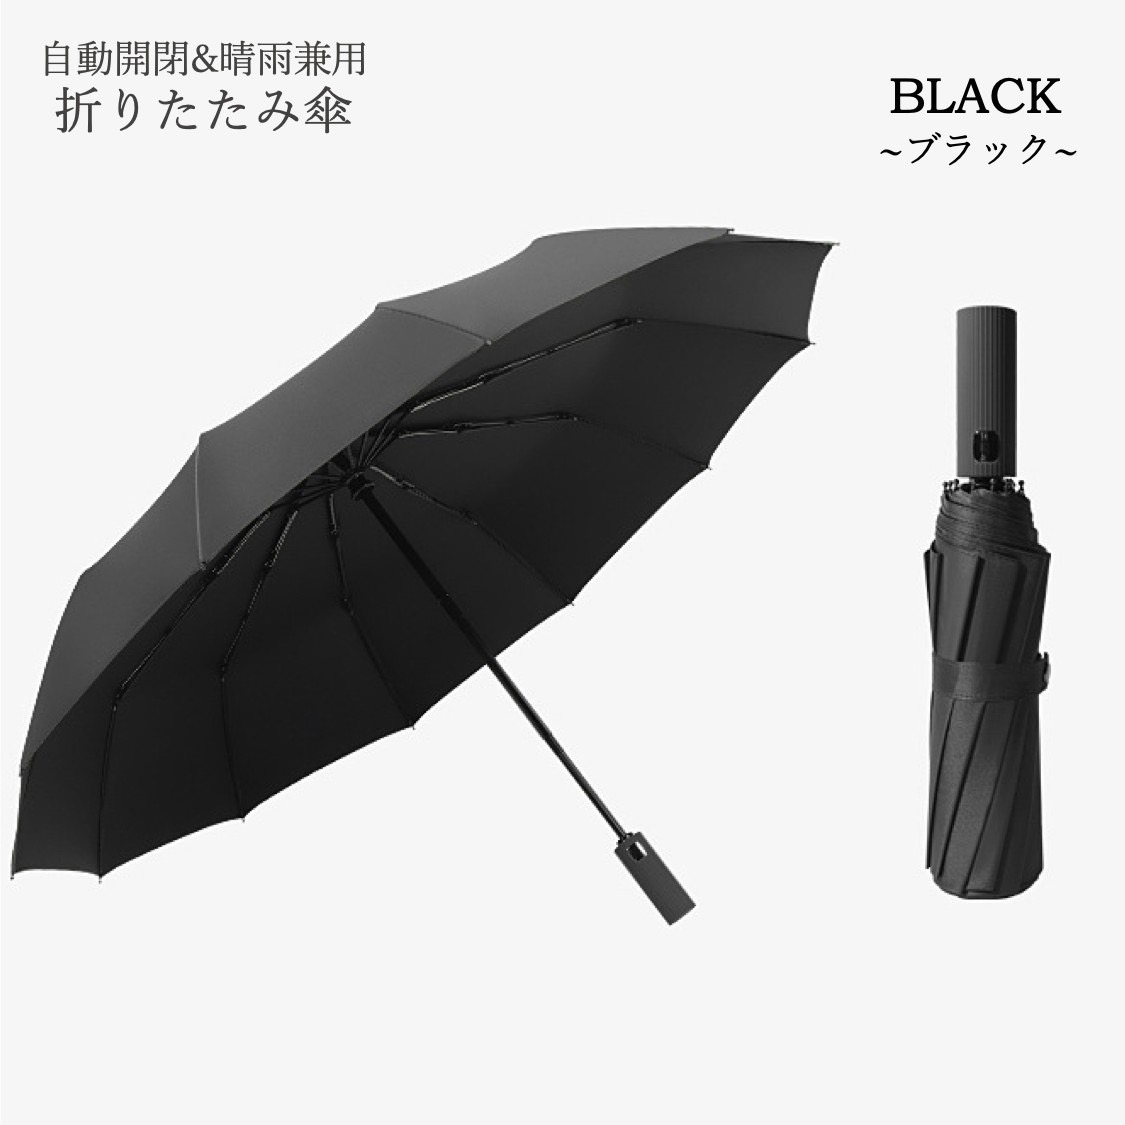 最適な価格 折りたたみ傘 晴雨兼用 自動開閉 12本骨 メンズ レディース